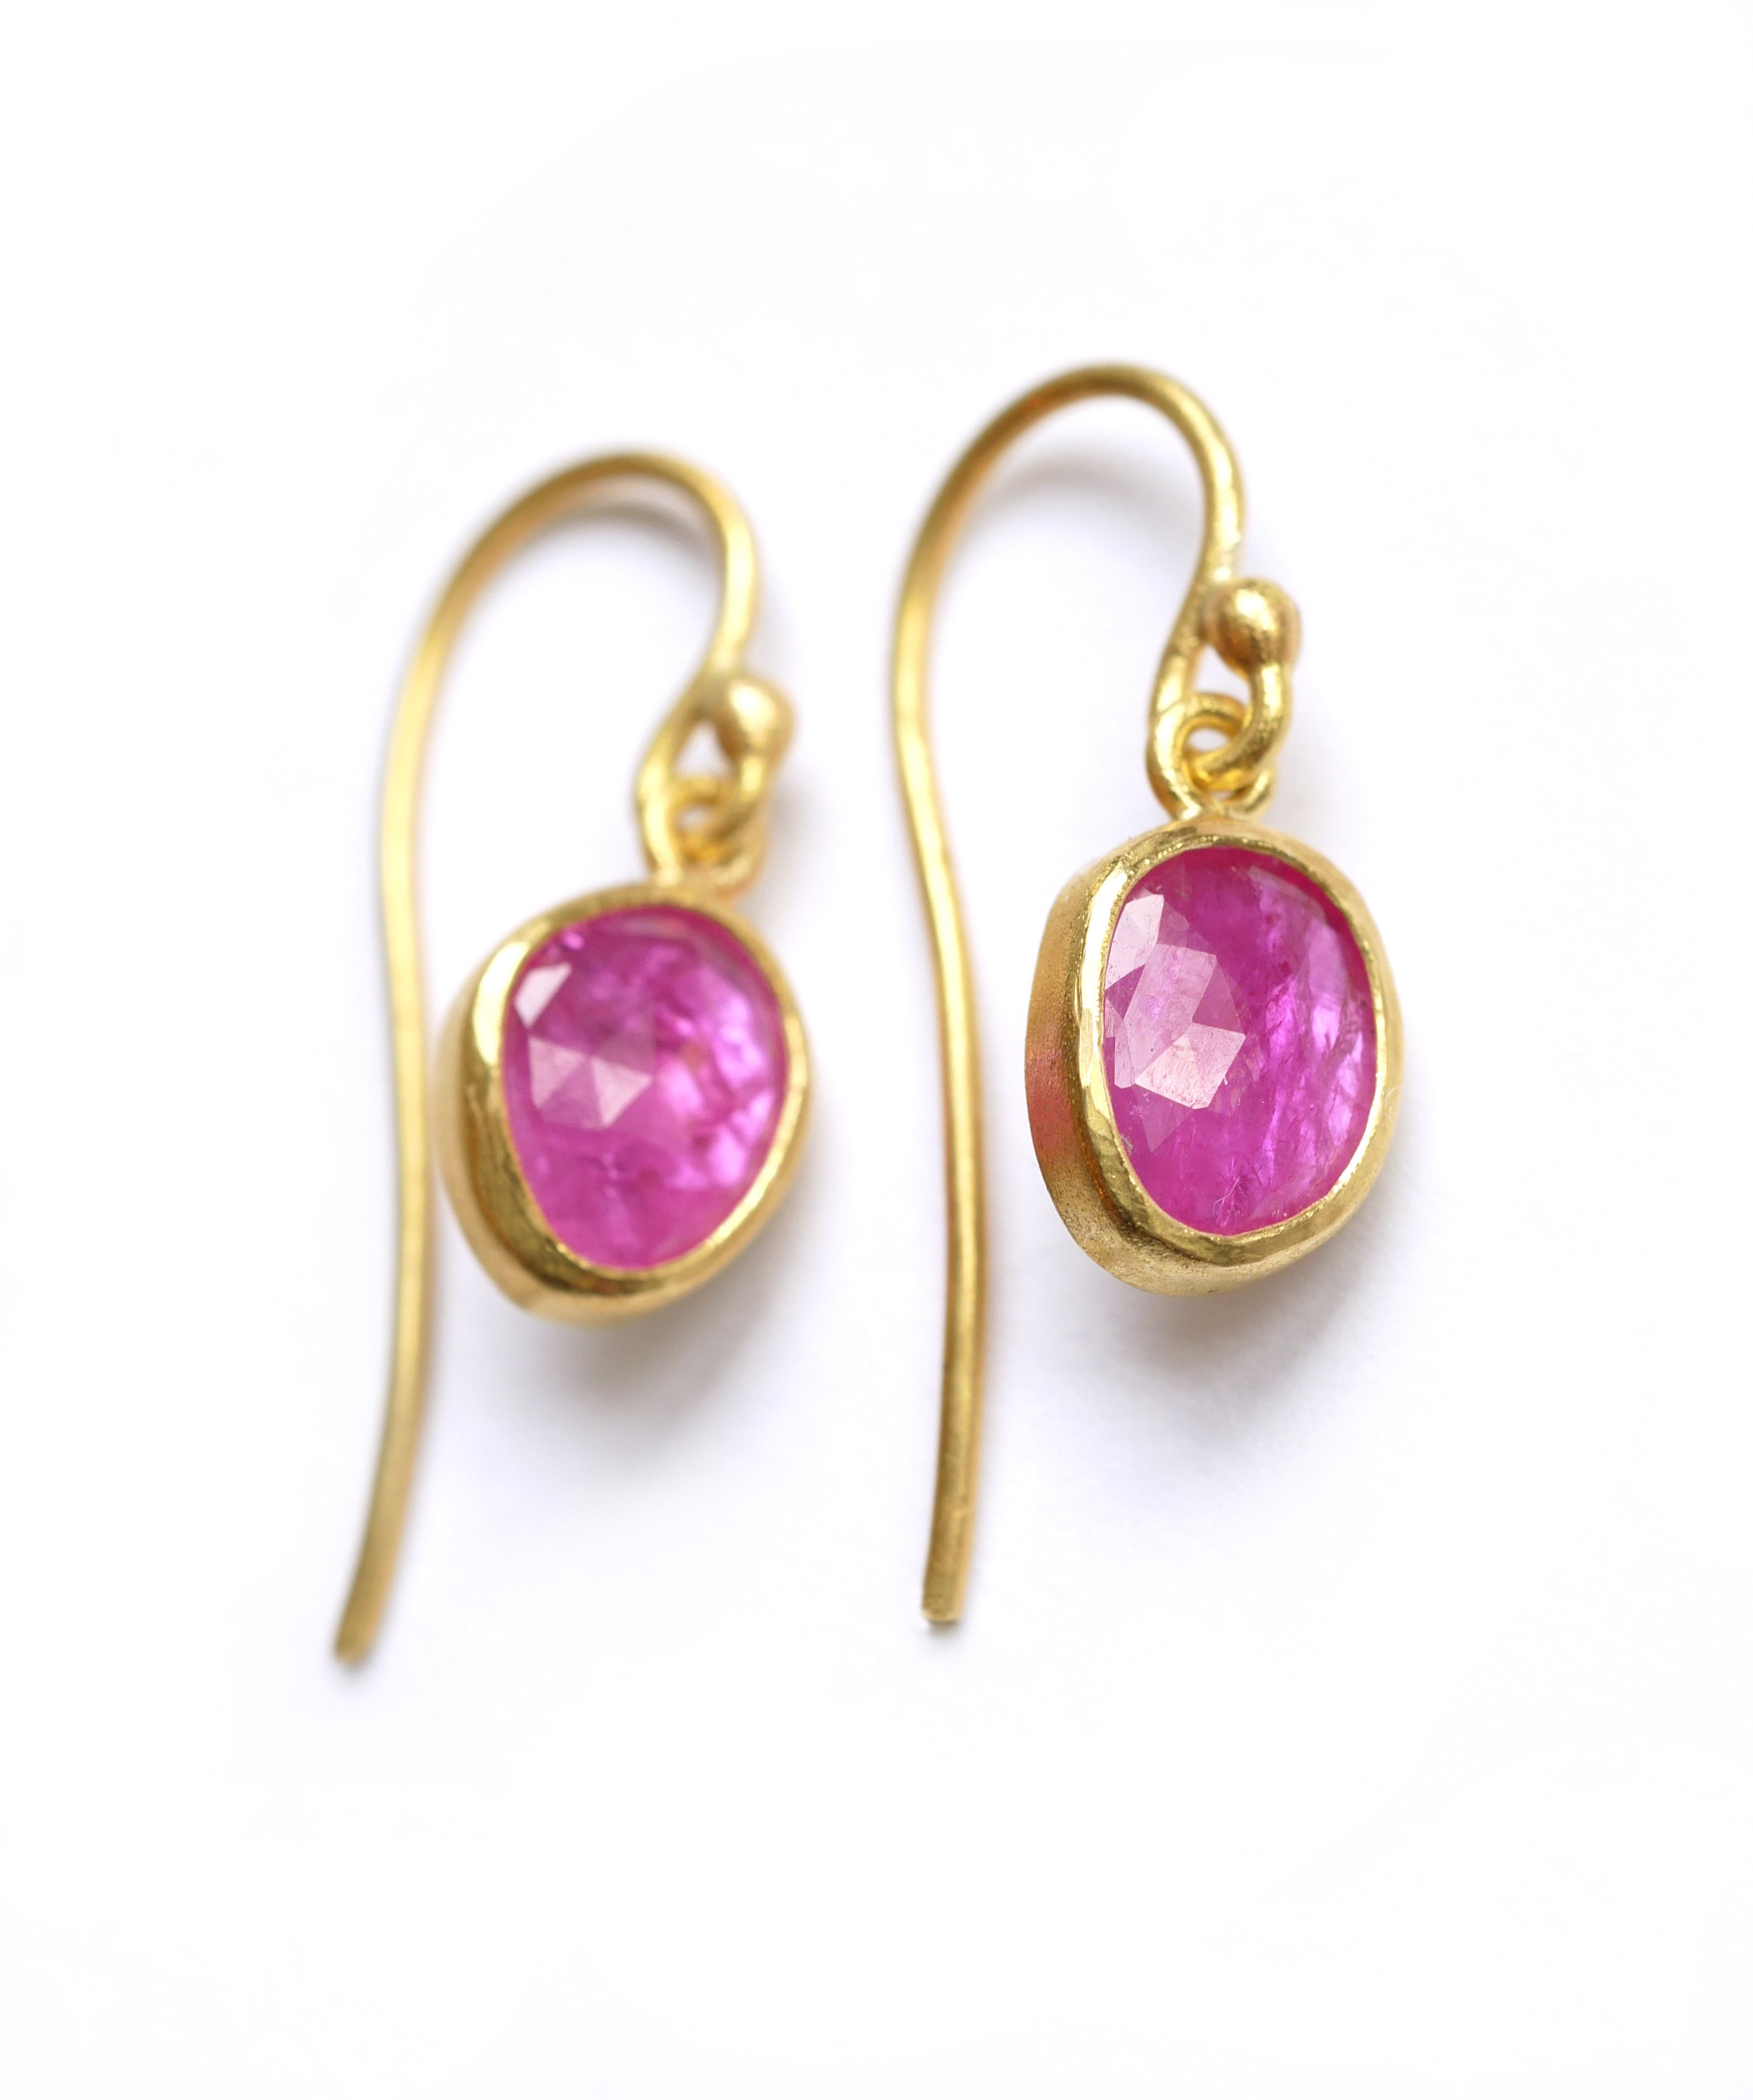 earrings_pinkruby2.jpg